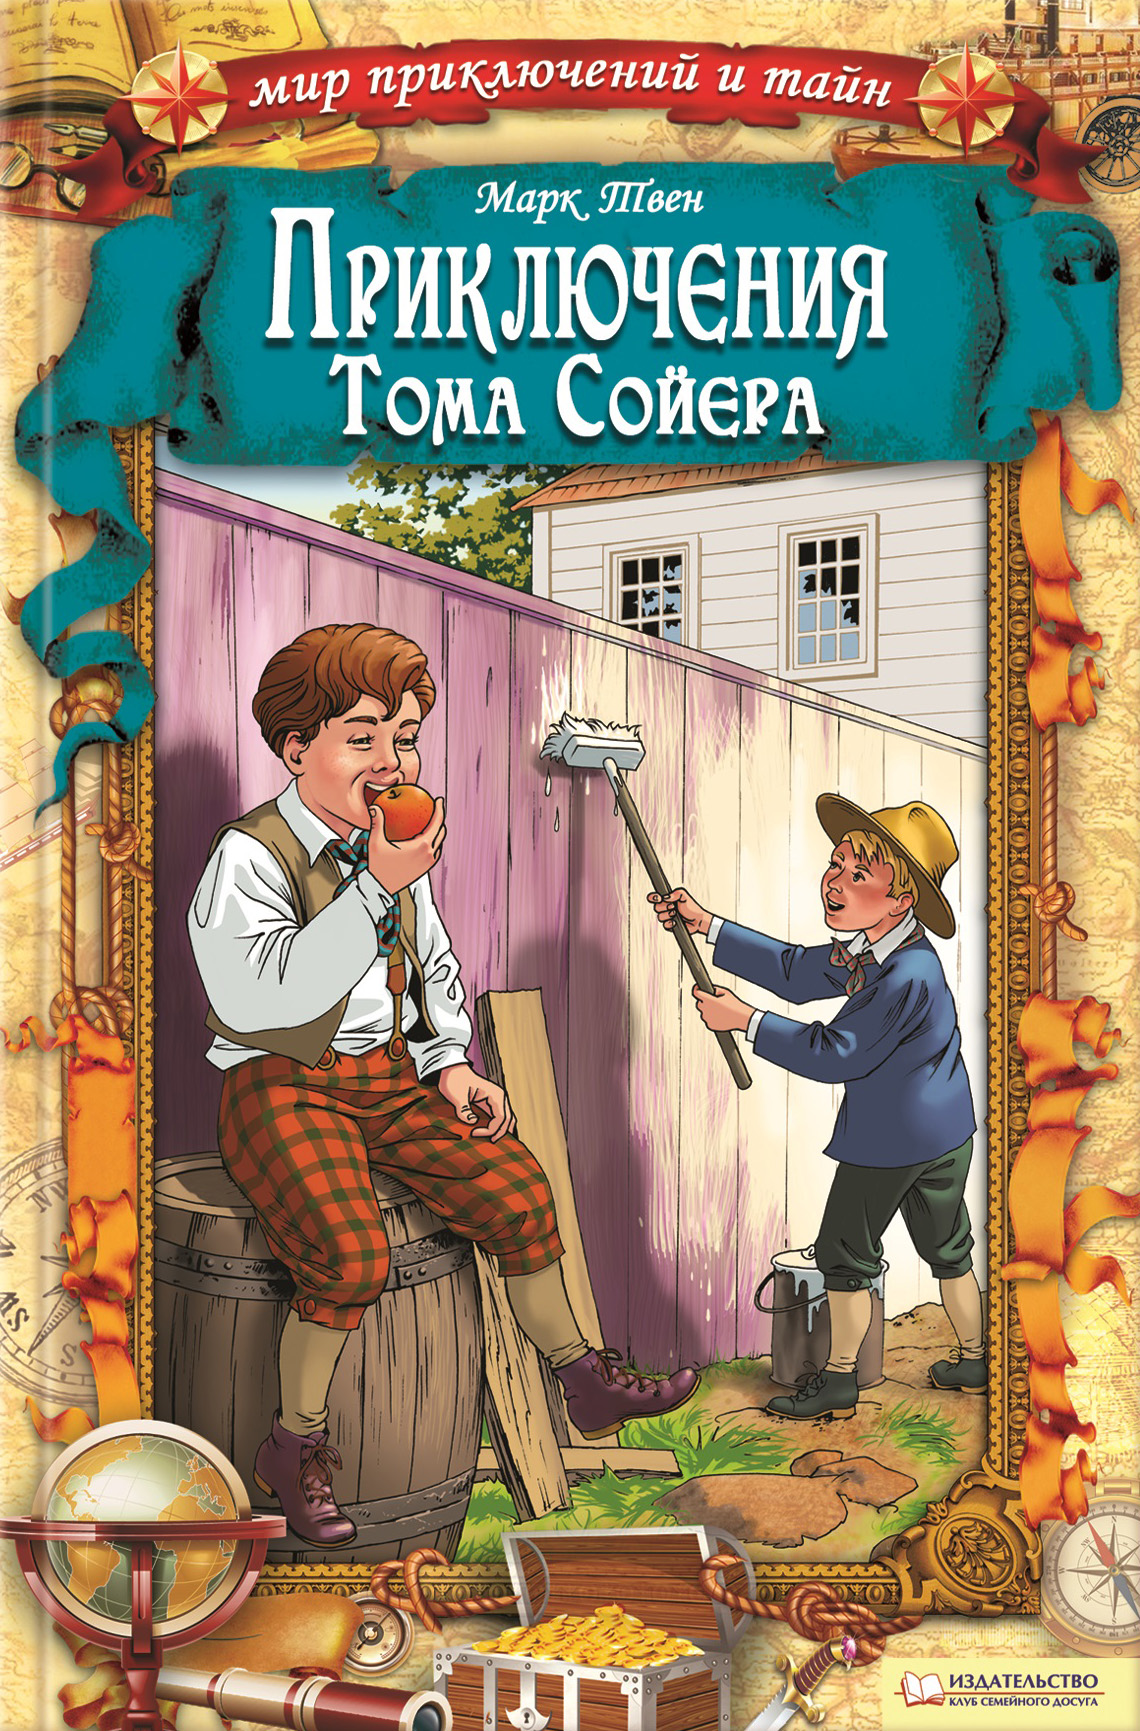 Приключения о томе сойере. Приключения Томаса соево. Книга приключения Тома Сойера.